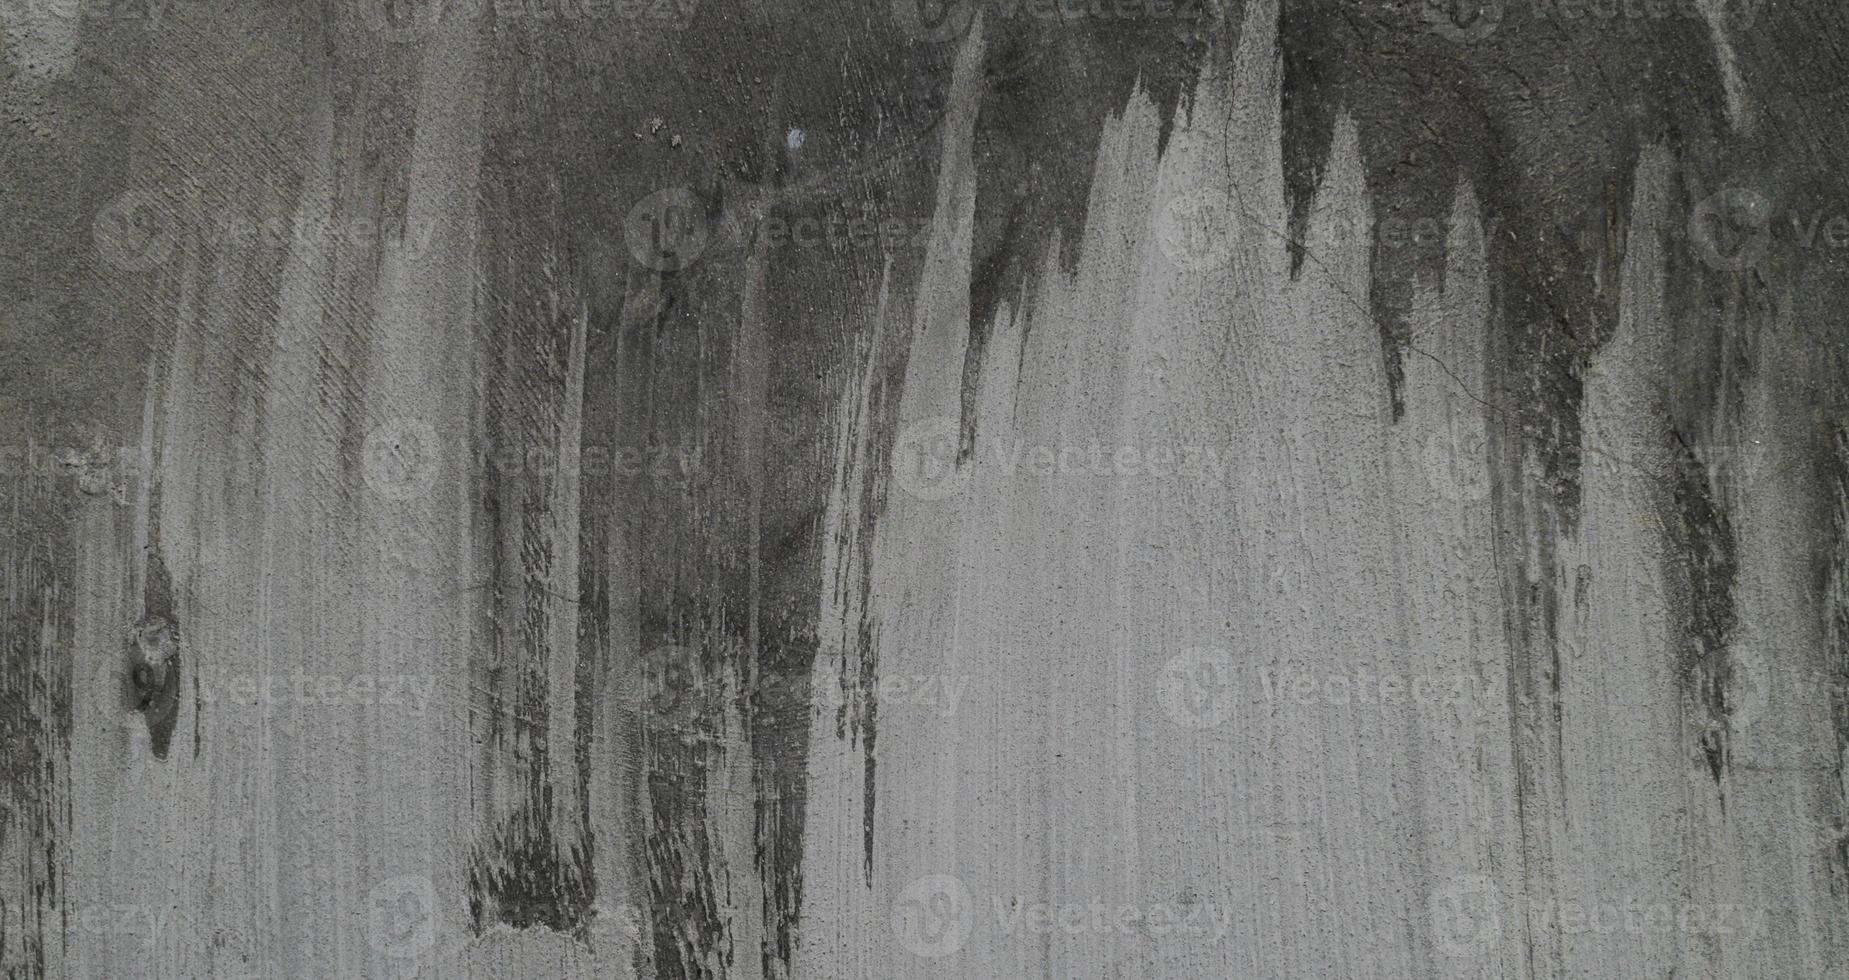 Resumo de parede de cimento velho. textura de parede de fundo vintage foto